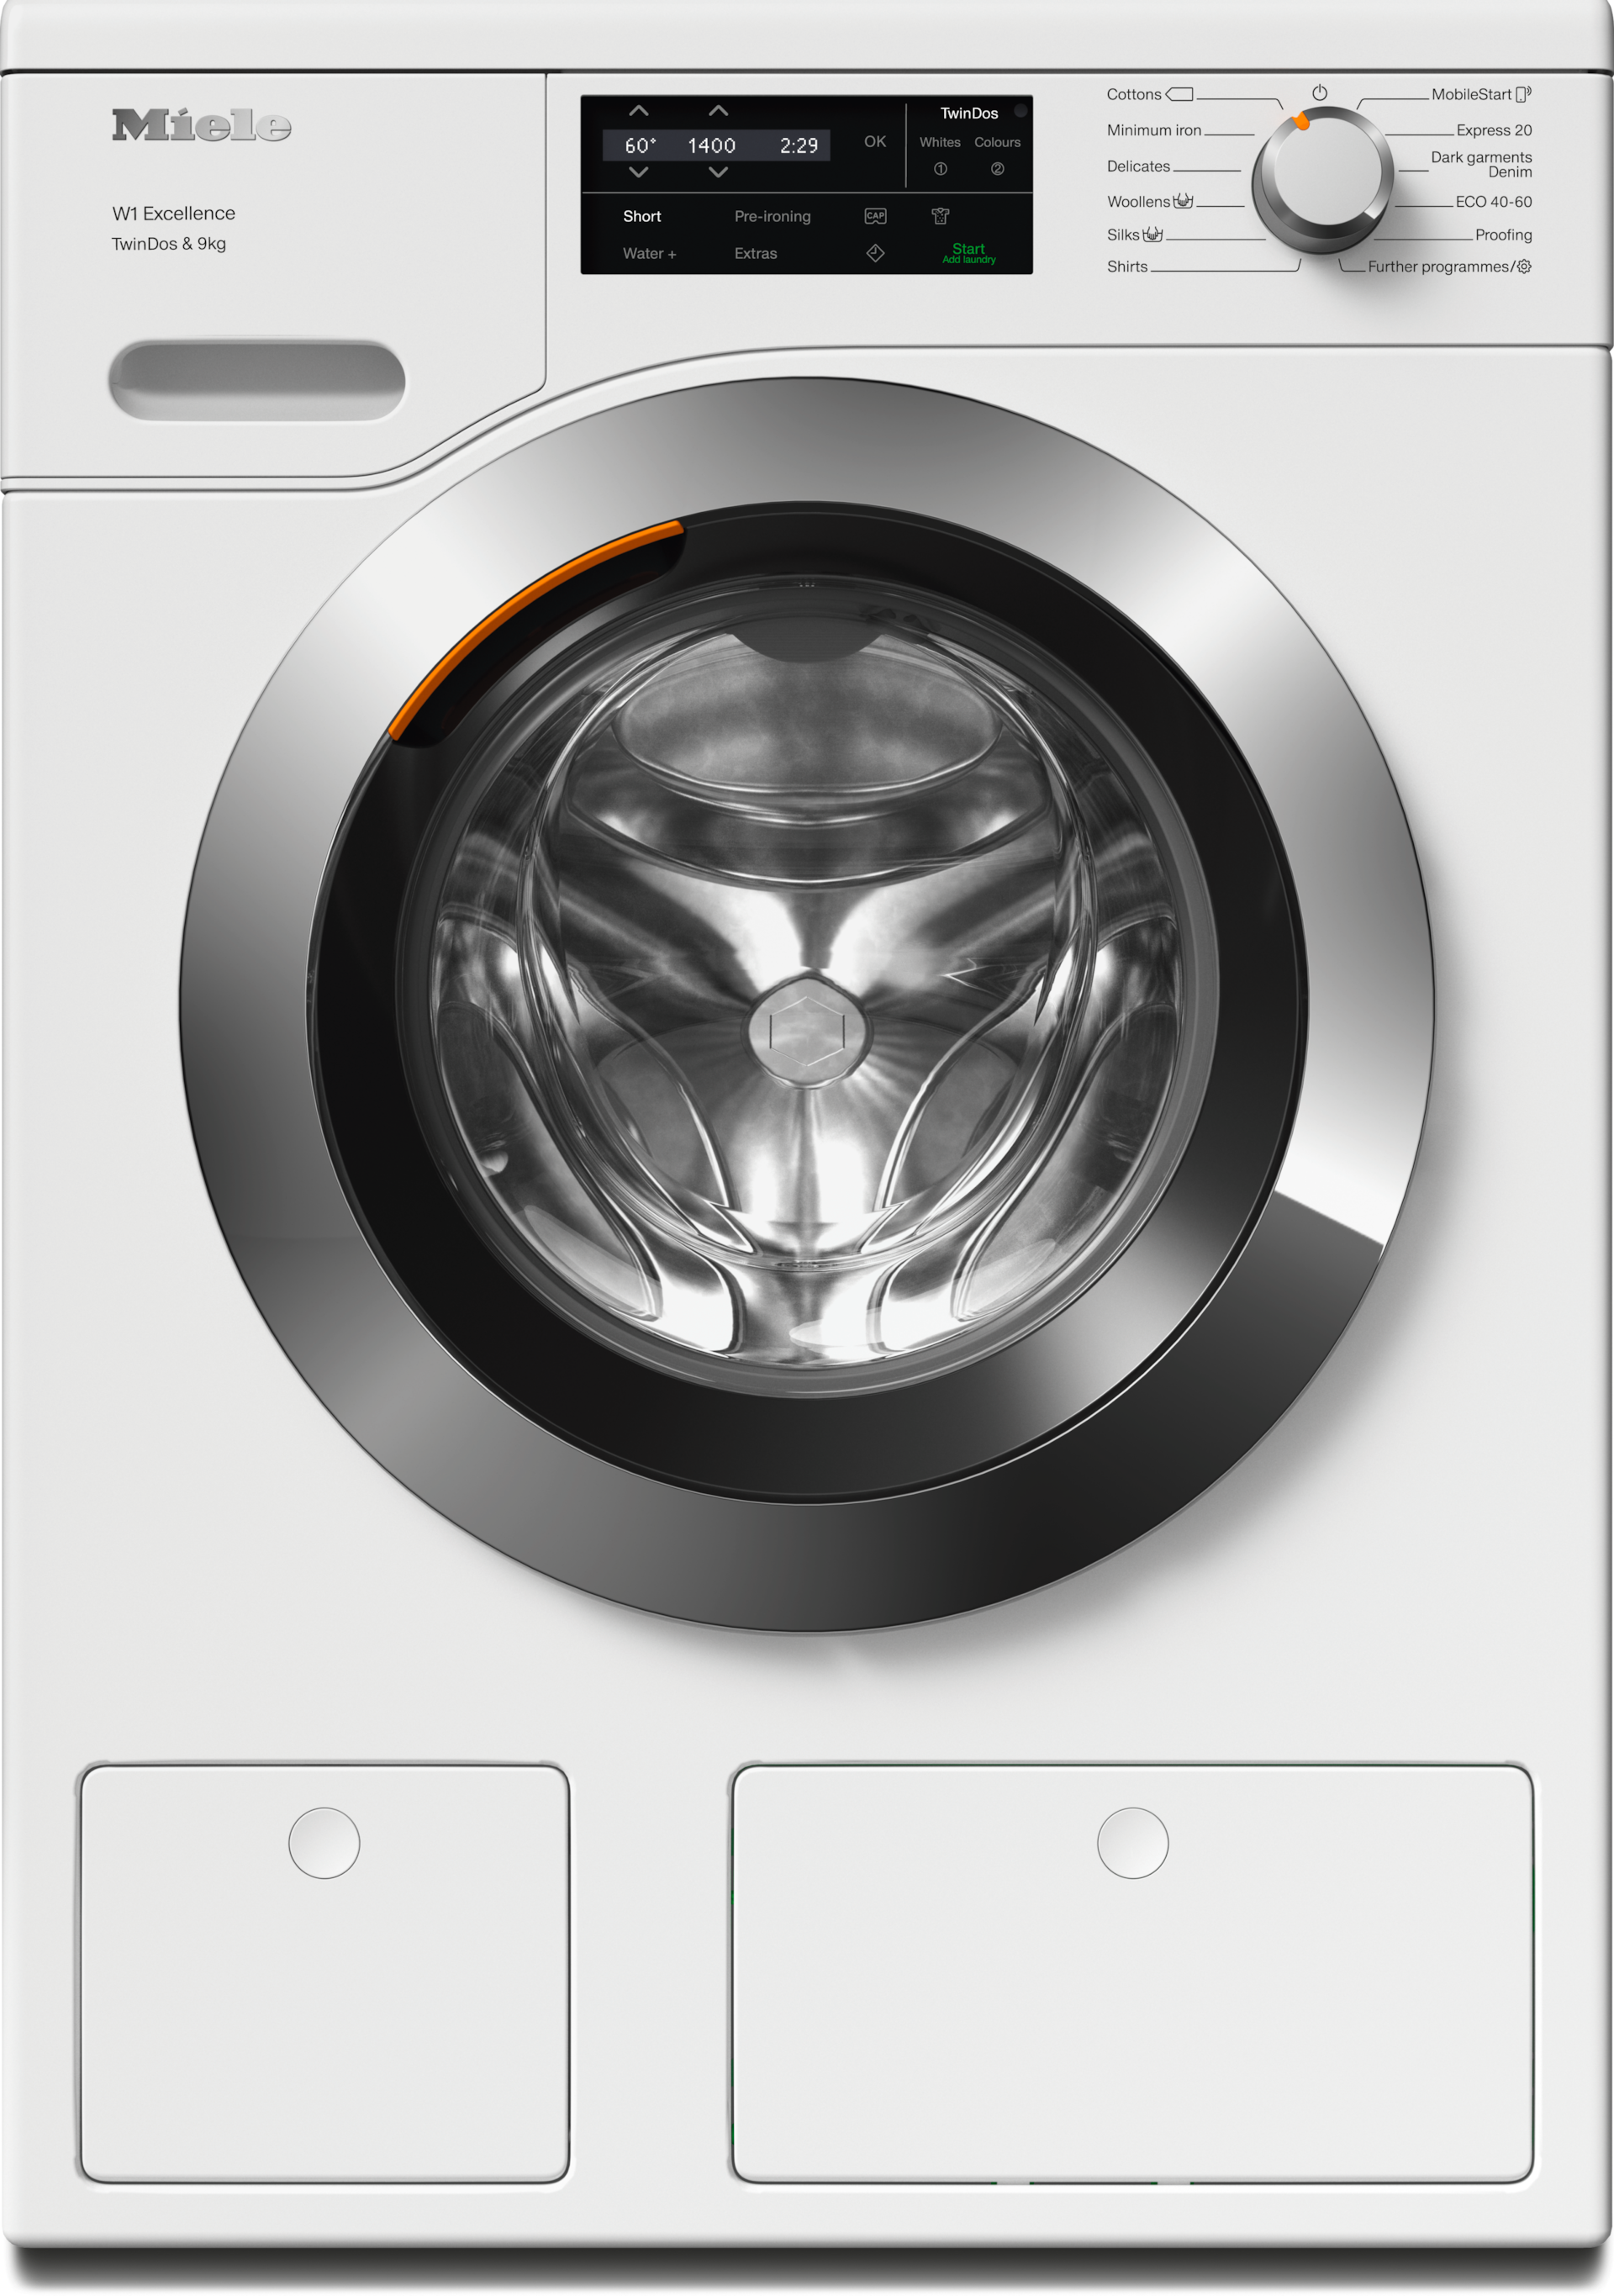 Washing machines - WEG665 WCS TDos&9kg Lotus white - 1